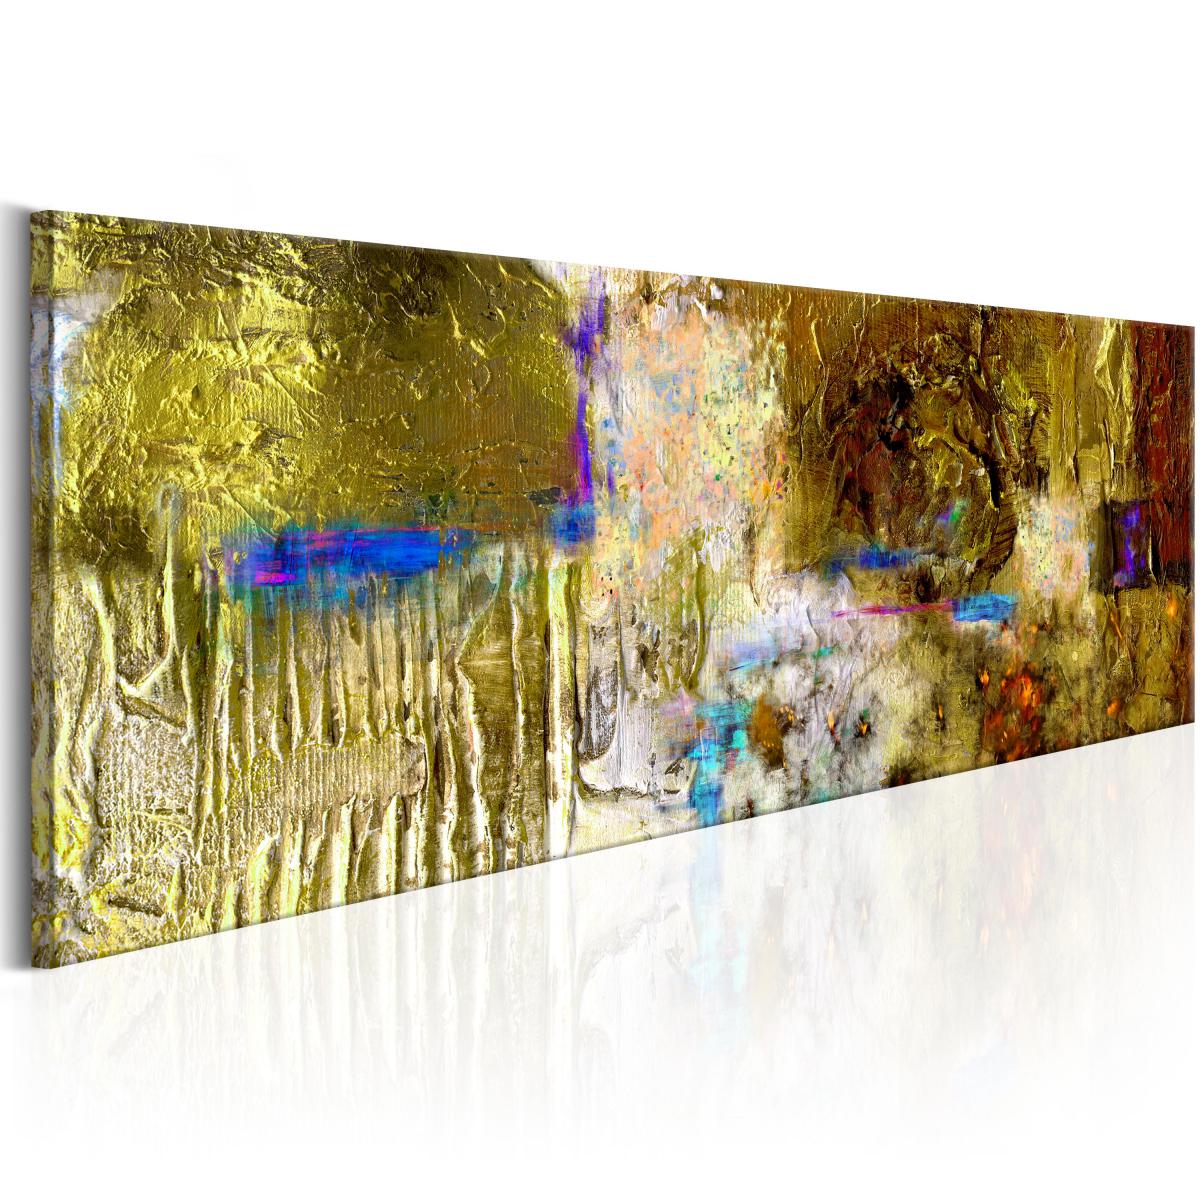 Bimago - Tableau peint à la main | Solar Treasure | 120x40 | Abstraction | Modernes | - Cloisons